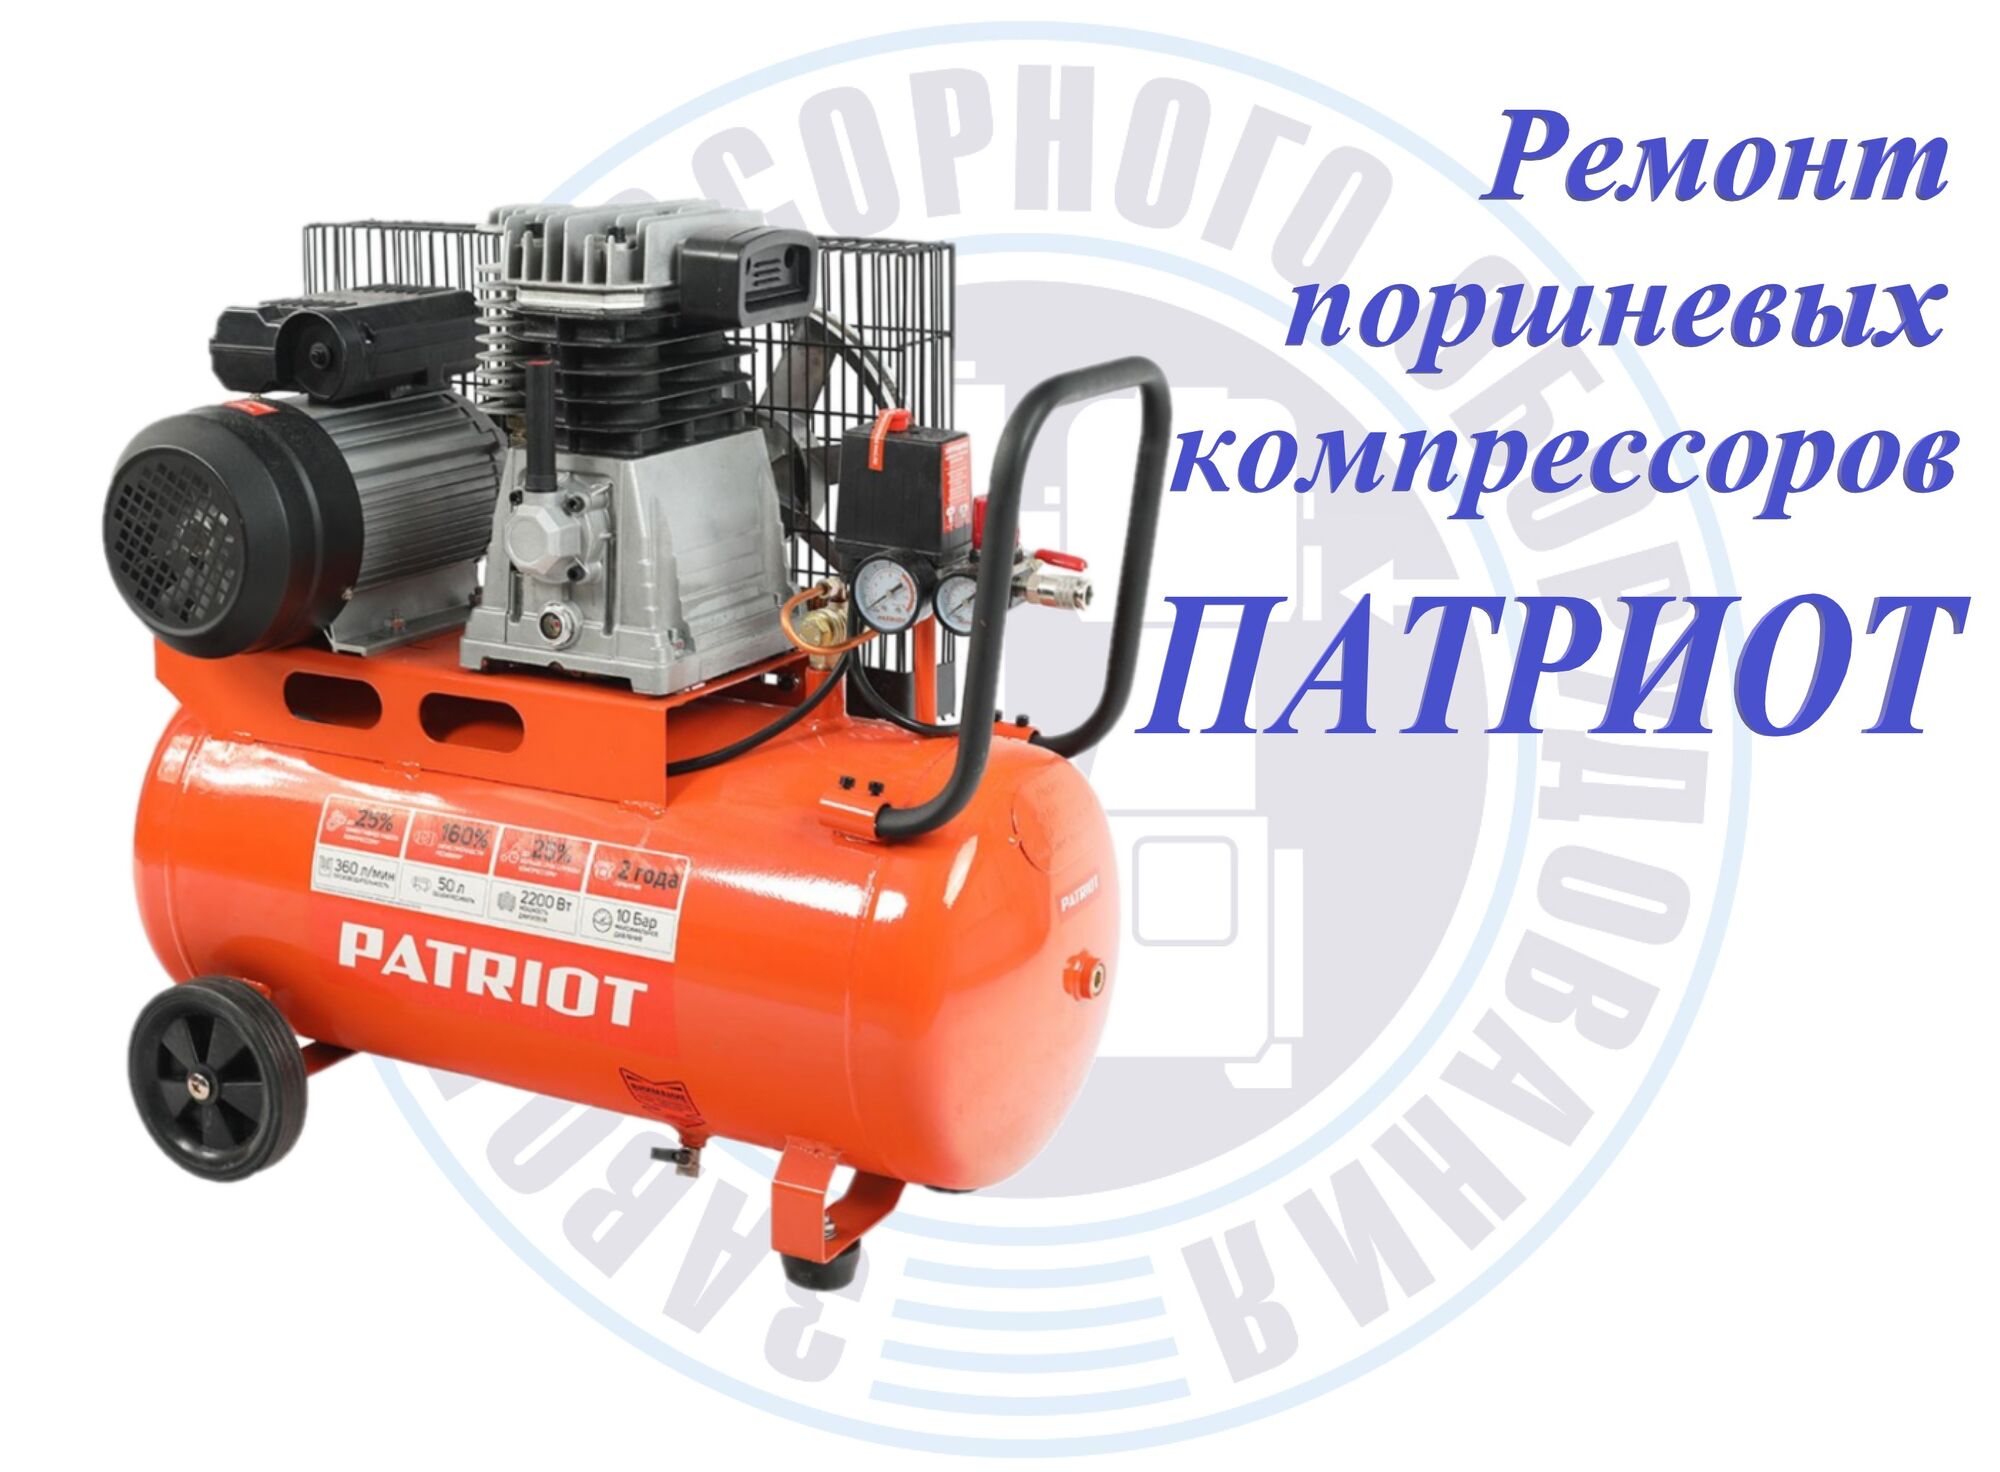 Ремонт компрессора Patriot (Патриот)